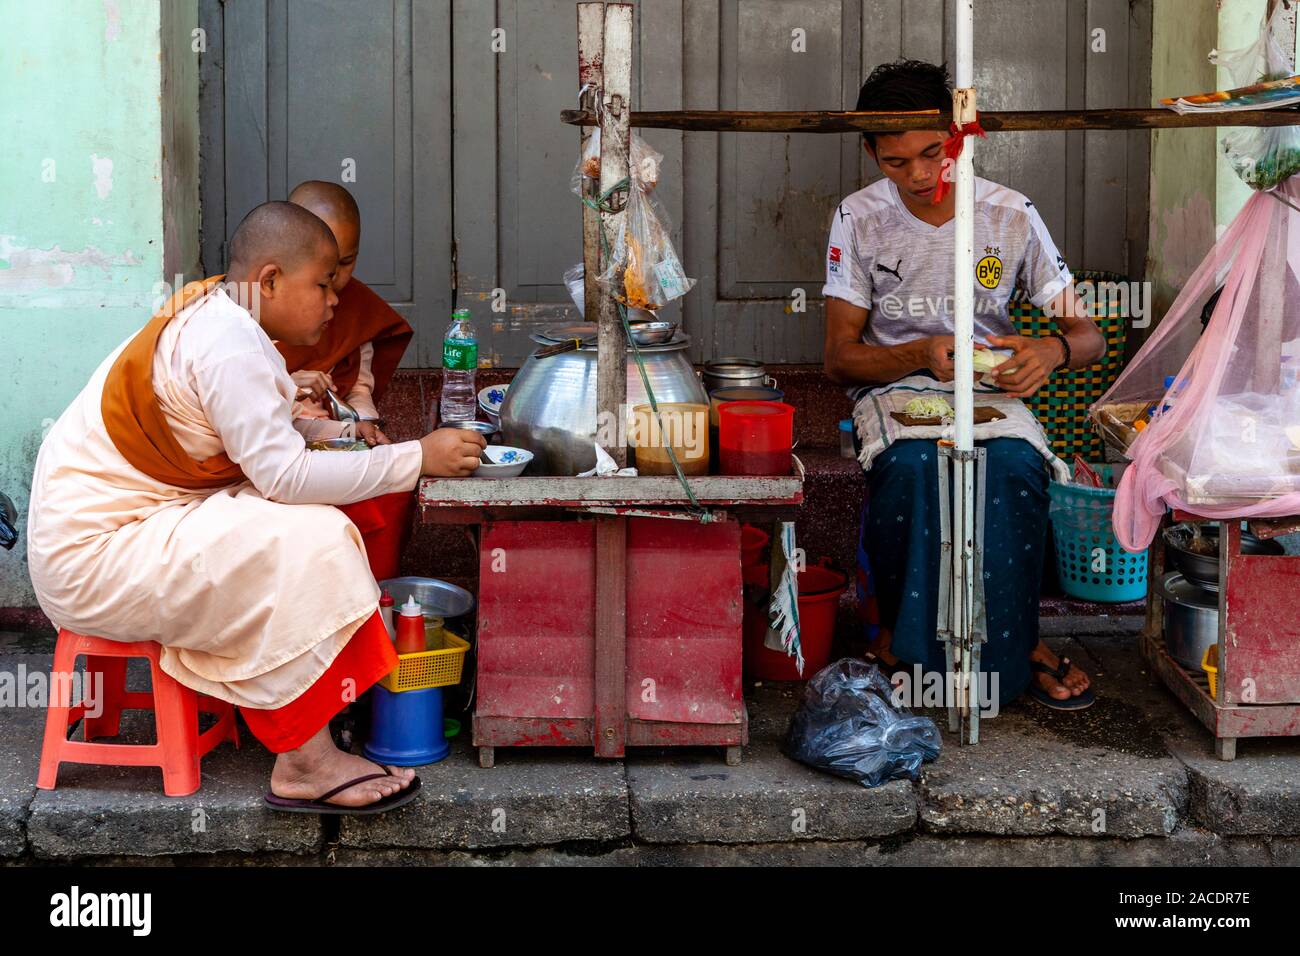 Zwei junge Thilashin (junger buddhistischer Nonnen) Mittagessen an einer Garküche in der Innenstadt von Rangun, Yangon, Myanmar. Stockfoto